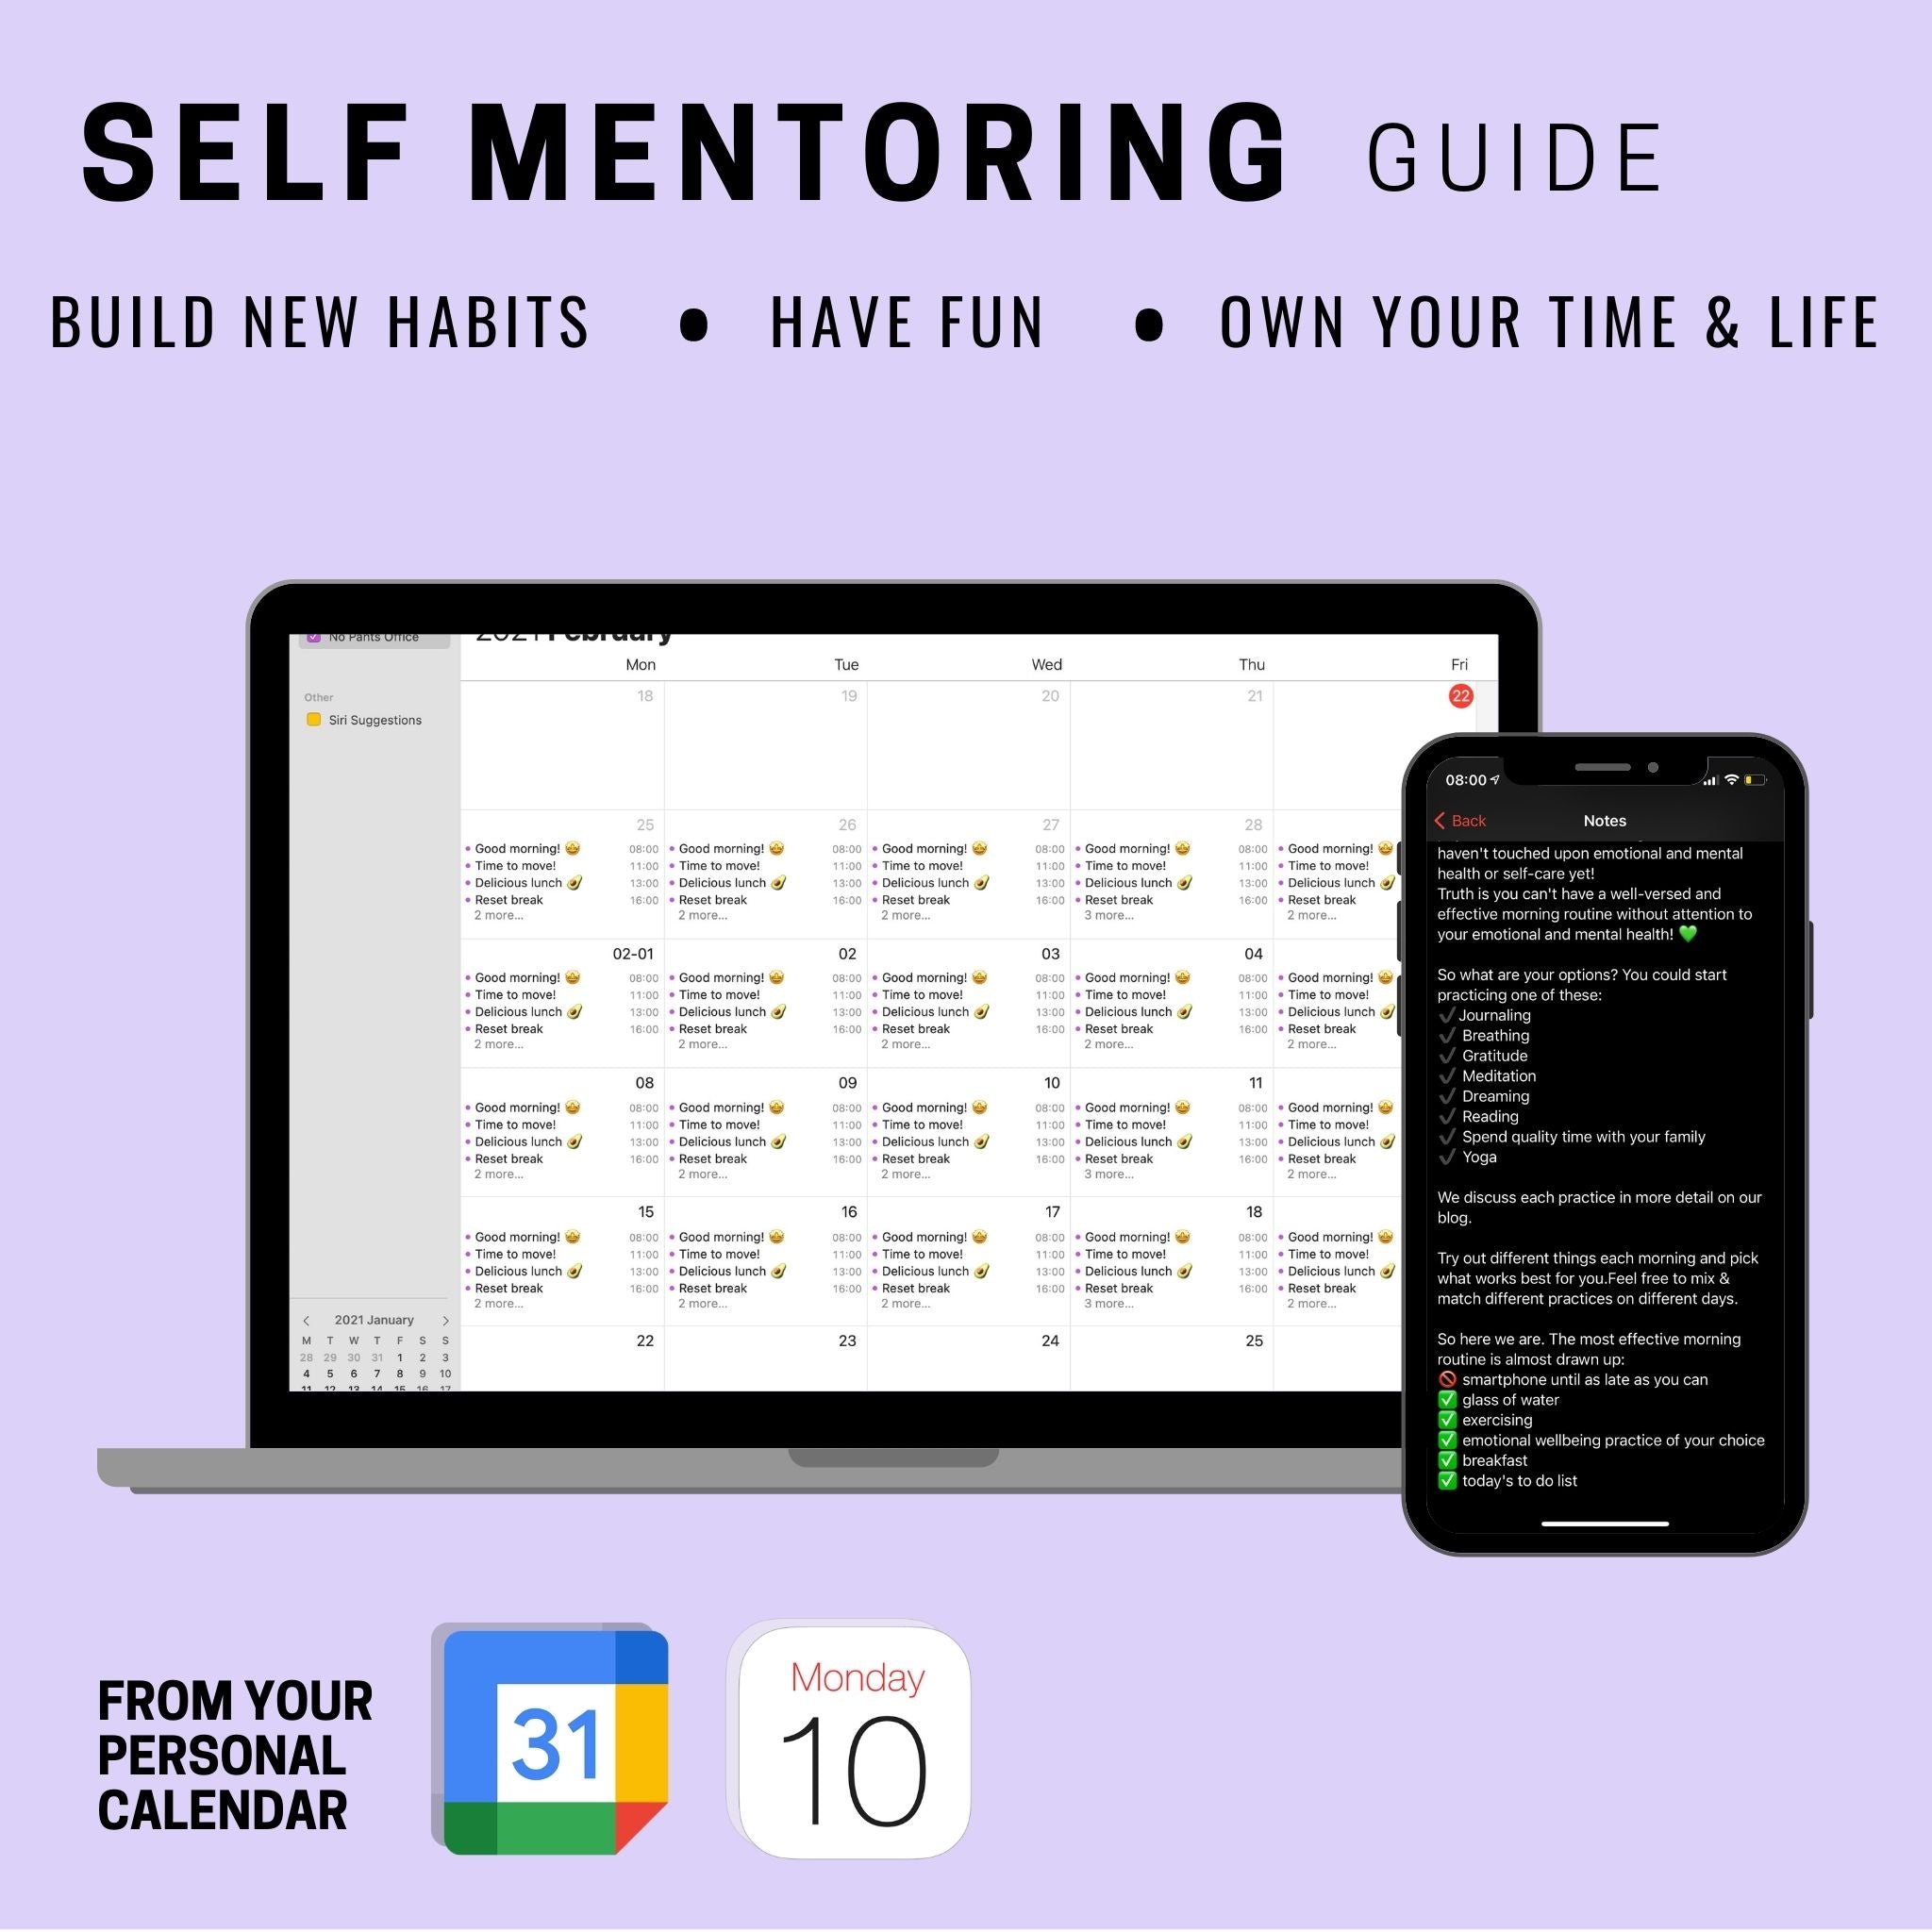 Self Mentoring Guide